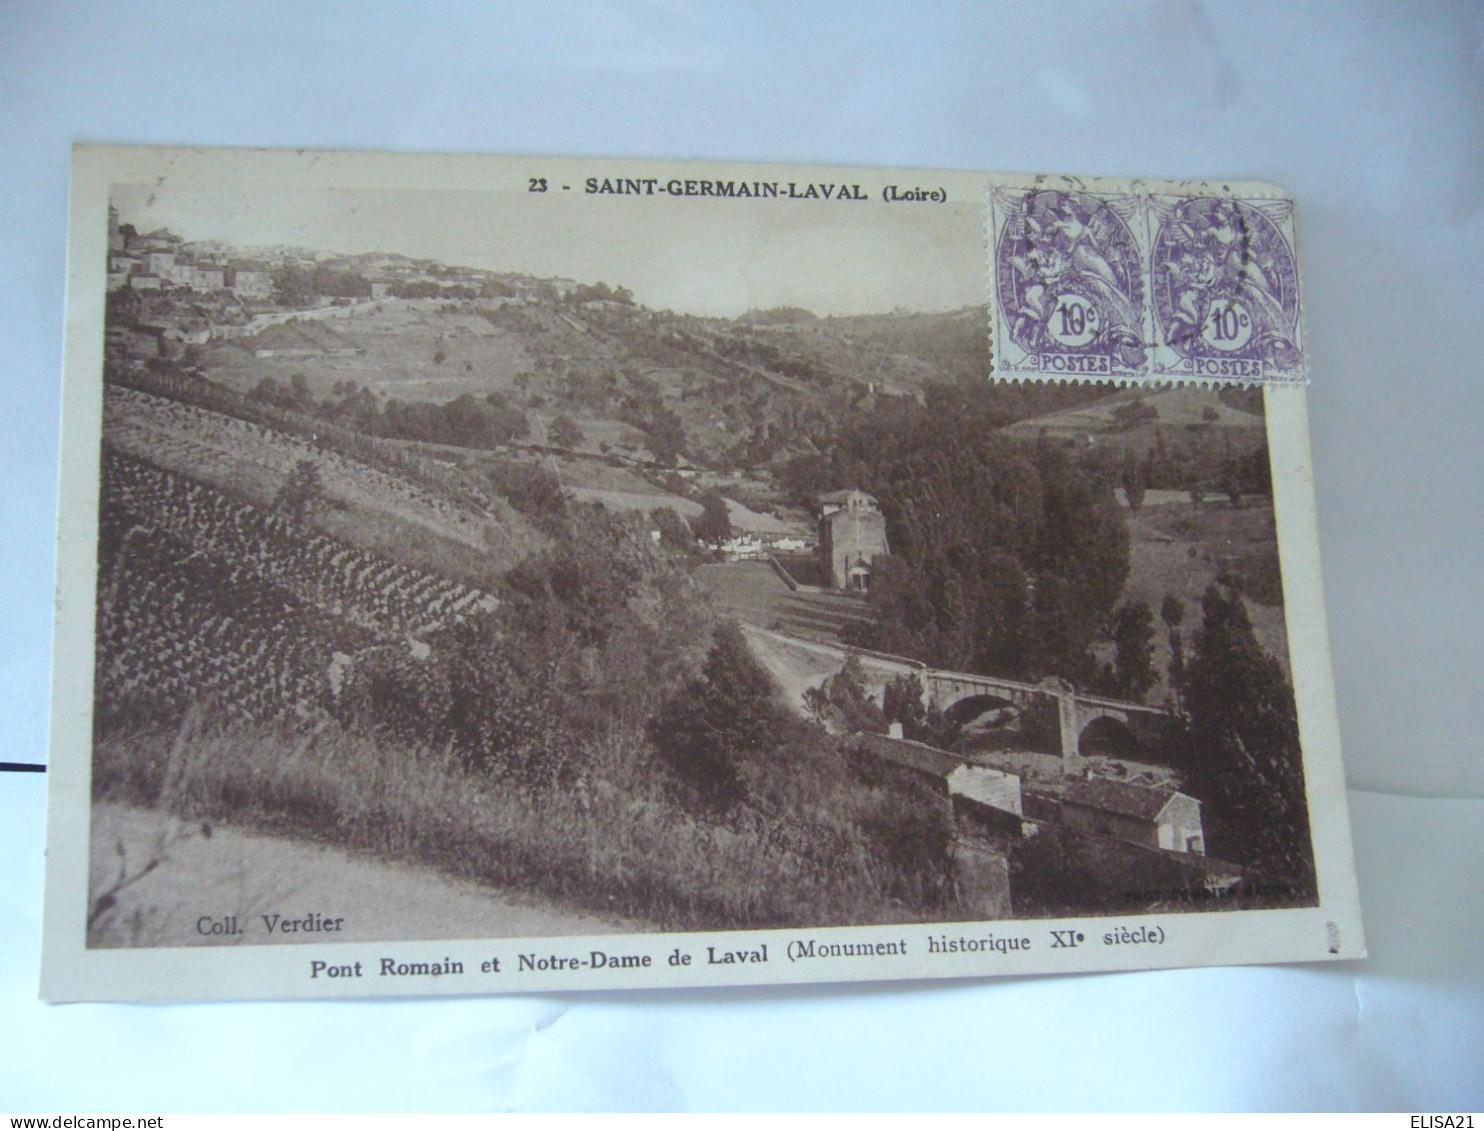 SAINT GERMAIN LAVAL  42 LOIRE PONT ROMAIN ET NOTRE DAME DE LAVAL CPA 1934 COLL VERDIER - Saint Germain Laval